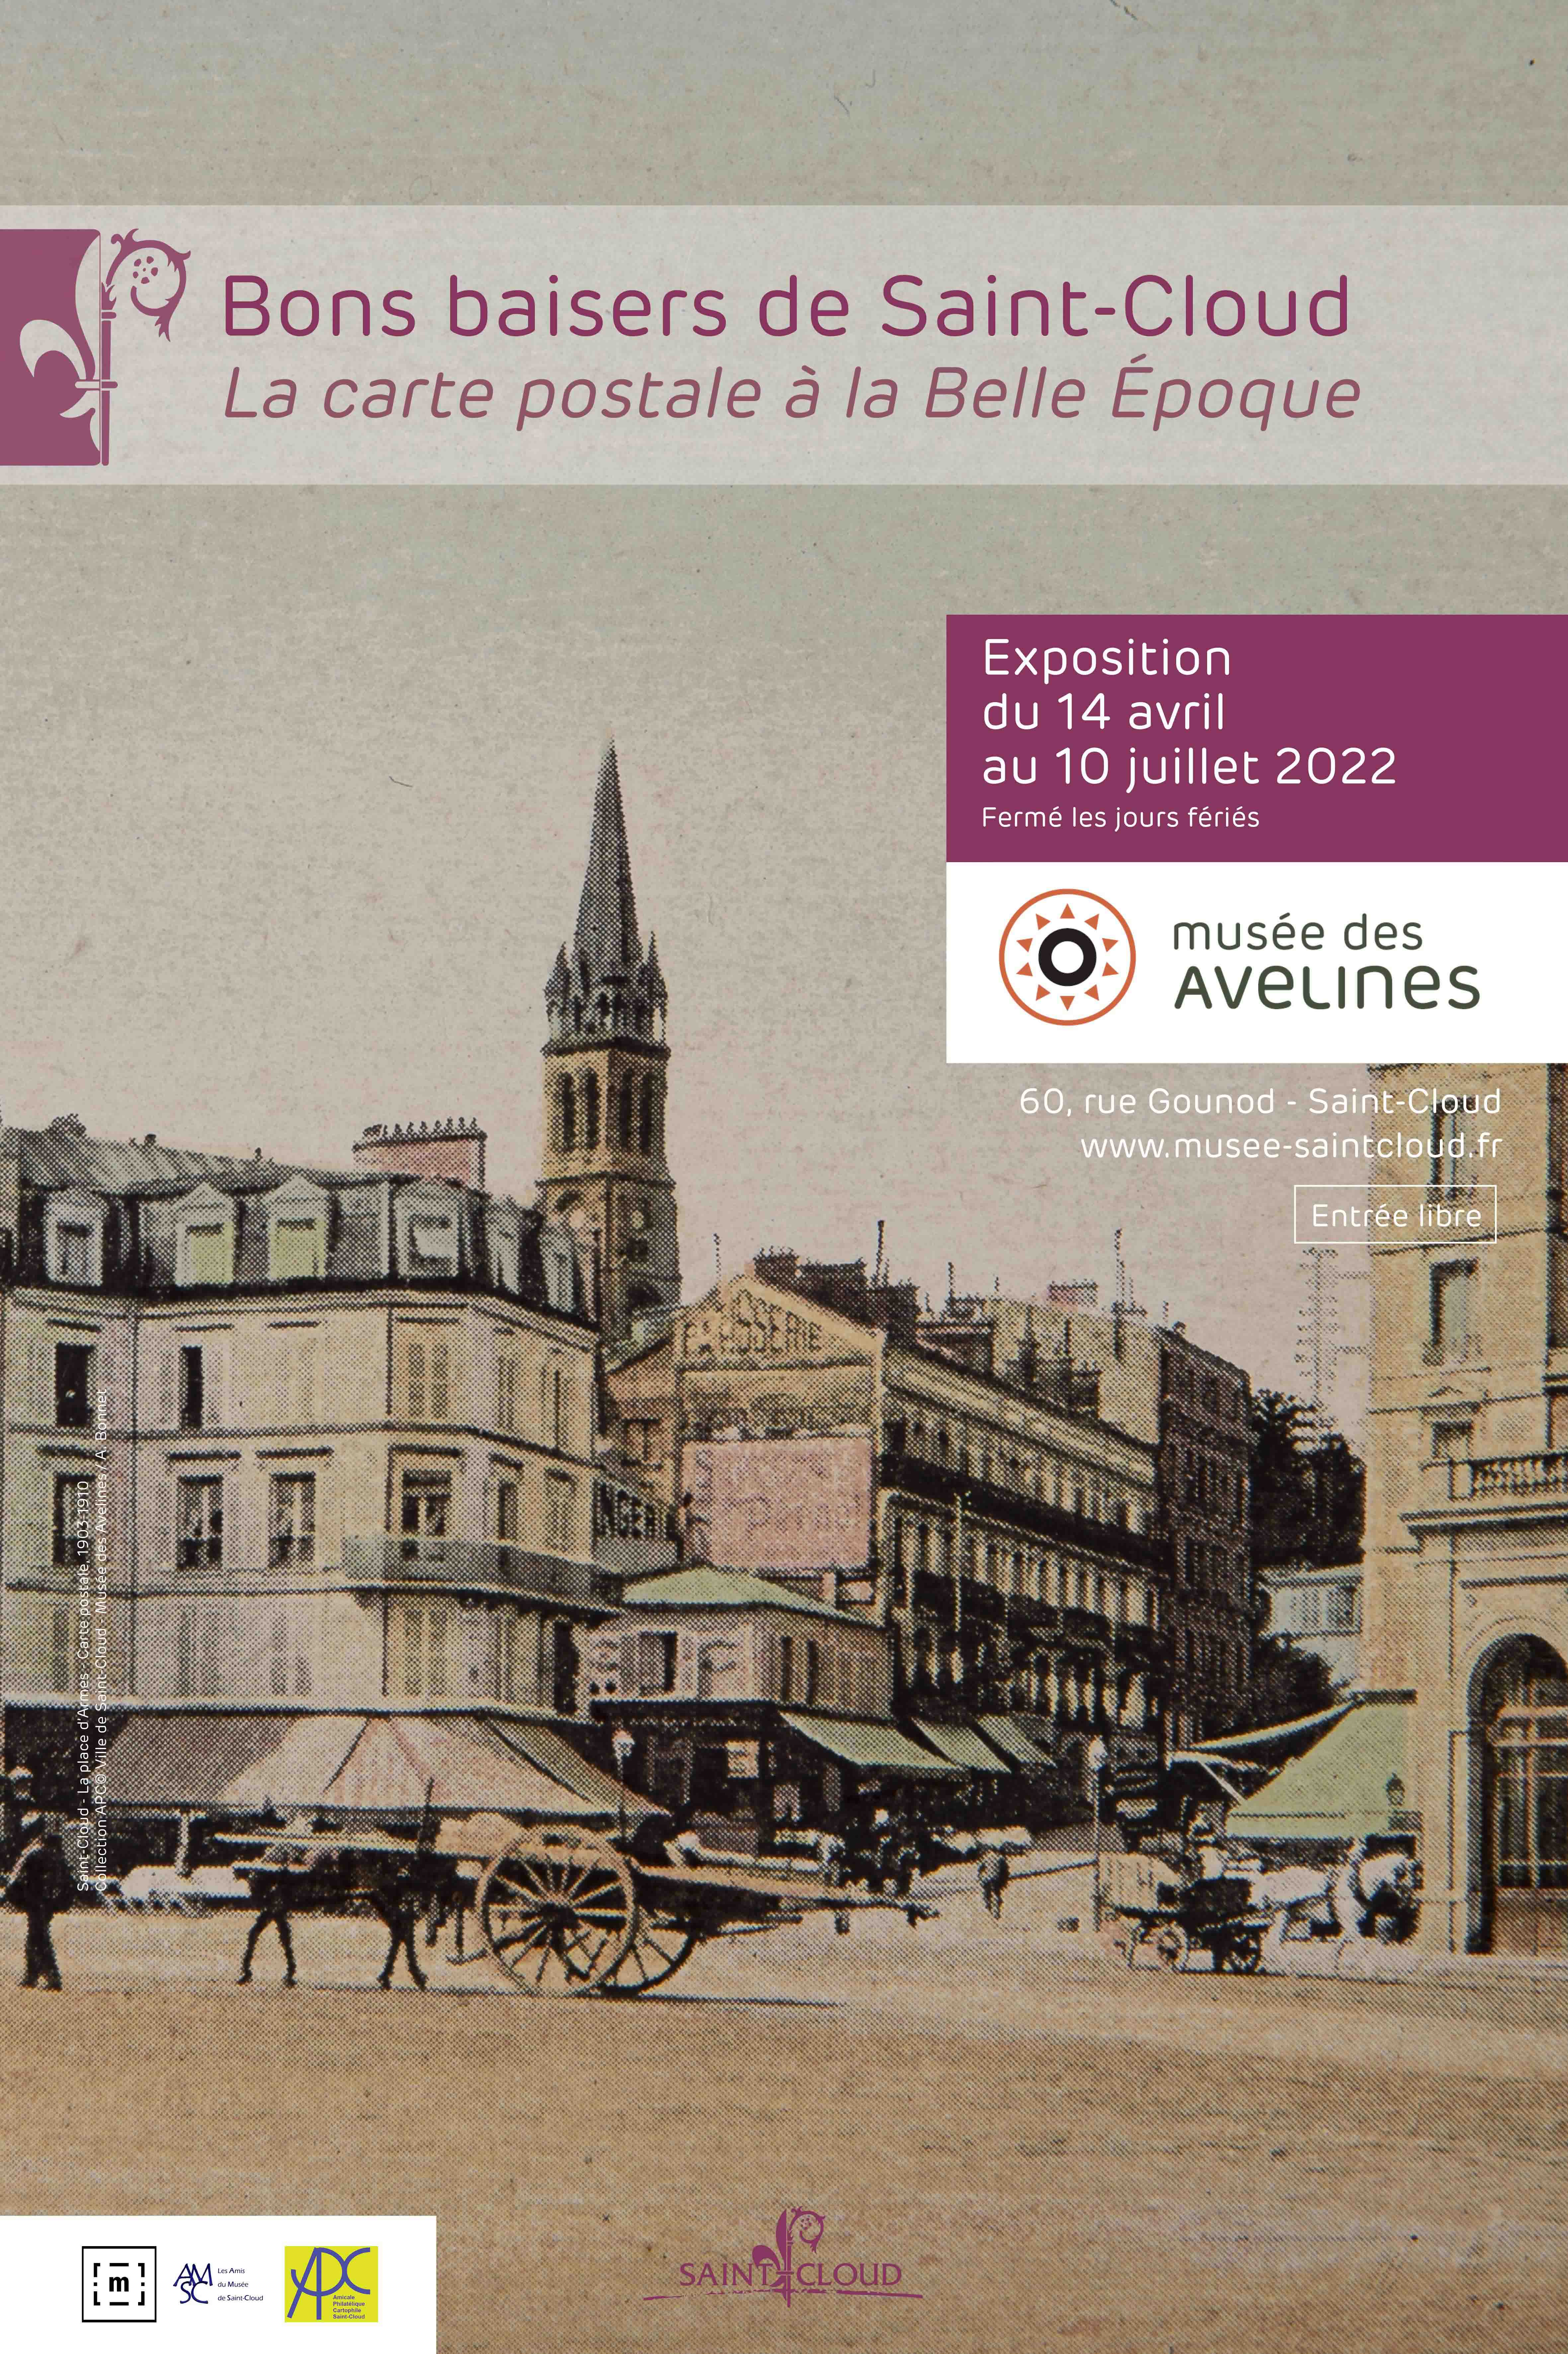 Exposition Bons baisers de Saint-Cloud au musée des Avelines